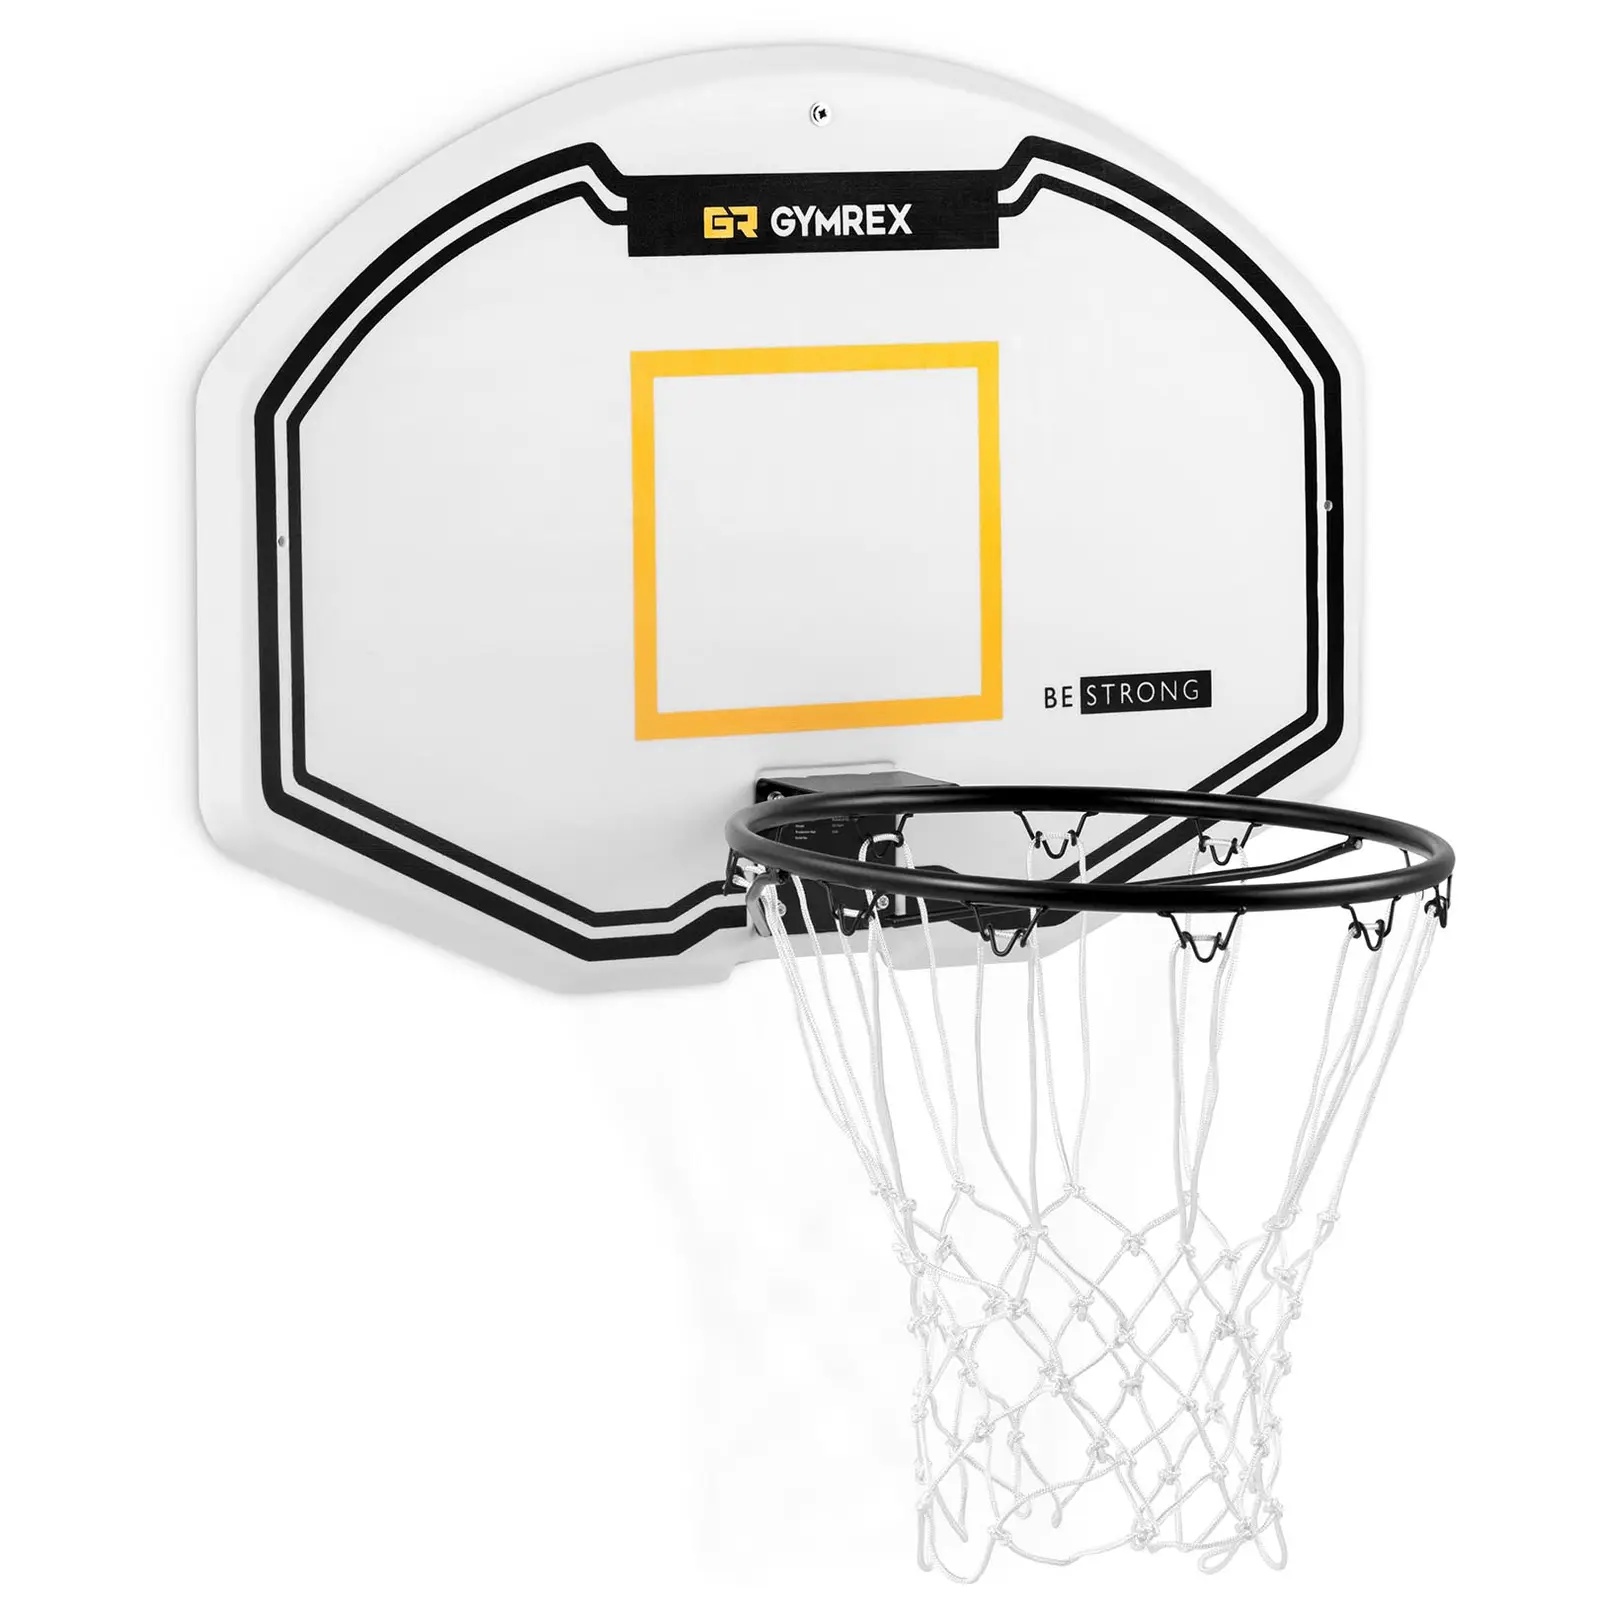 Canestro basket da muro con tabellone - 91 x 61 cm - Diametro: 42